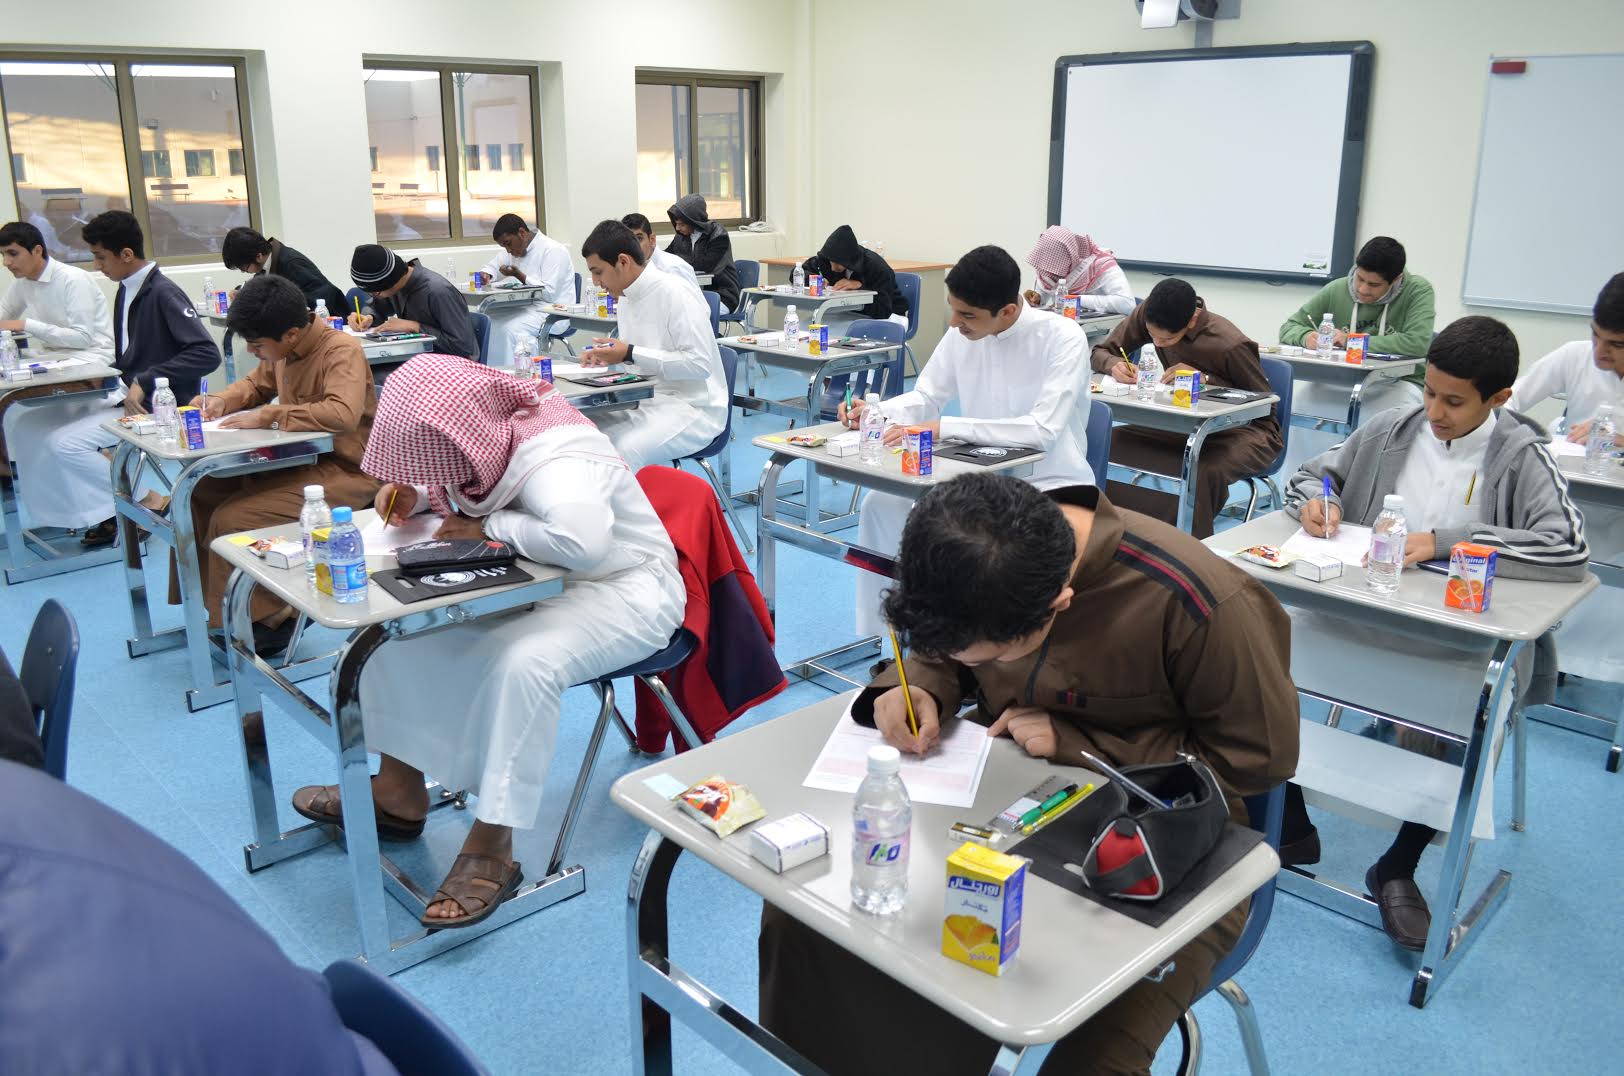 صورة عدد ساعات دوام المدارس في السعودية